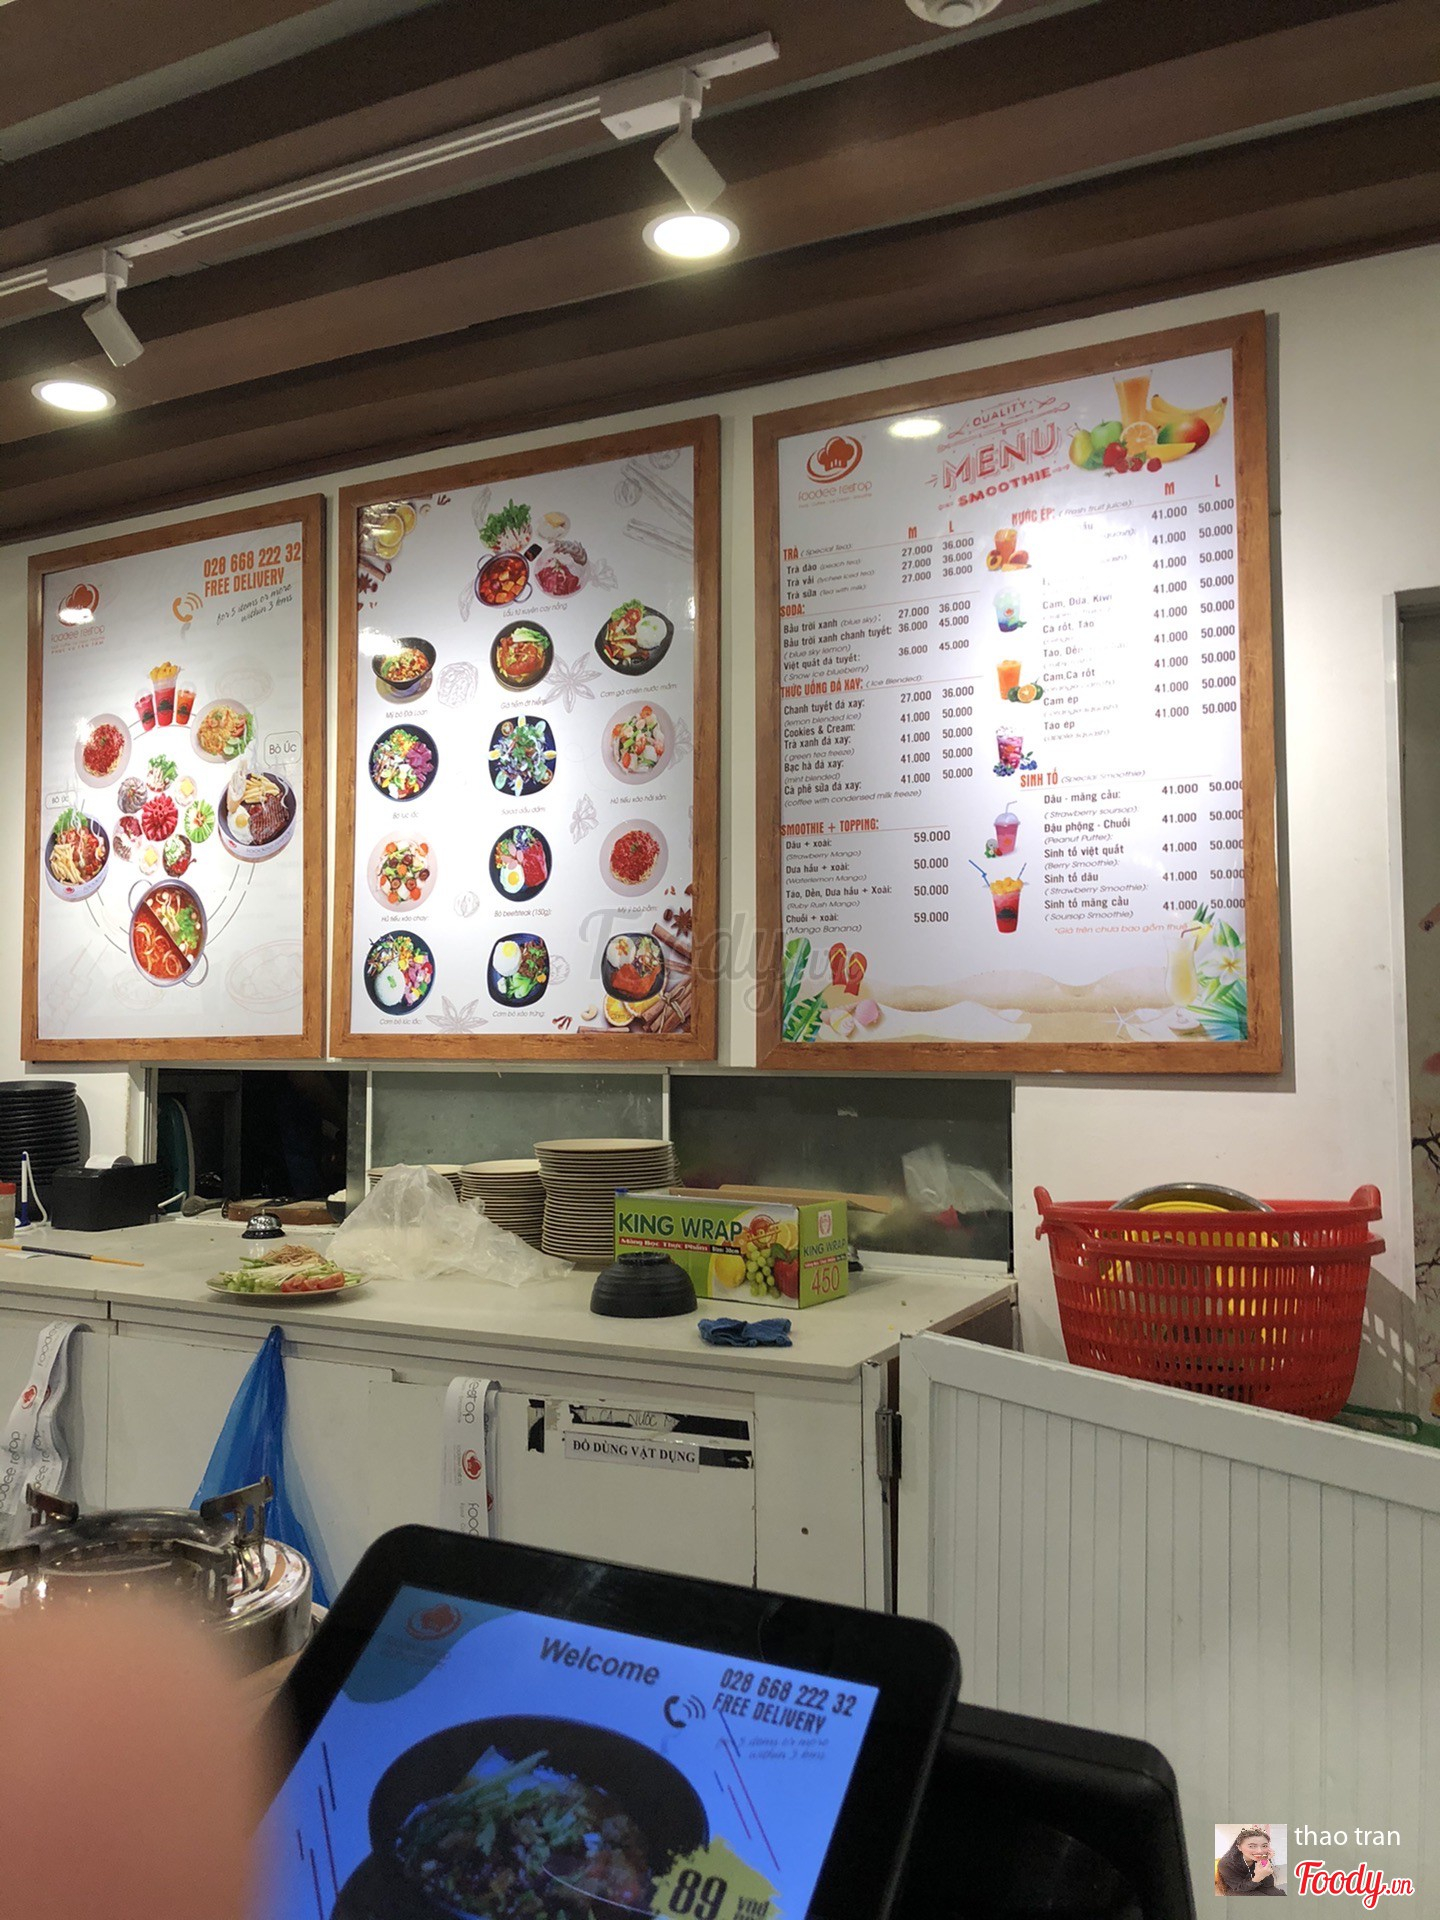 Foodee Restop tại Aeon Mall Tân Phú Celadon là một restaurant tuyệt vời nhất để thưởng thức các món ăn ngon. Với không gian thoải mái, cách phục vụ tỉ mỉ và giá cả hợp lý, đây là địa chỉ mà bạn không nên bỏ qua. Xem hình để cảm nhận hơn.